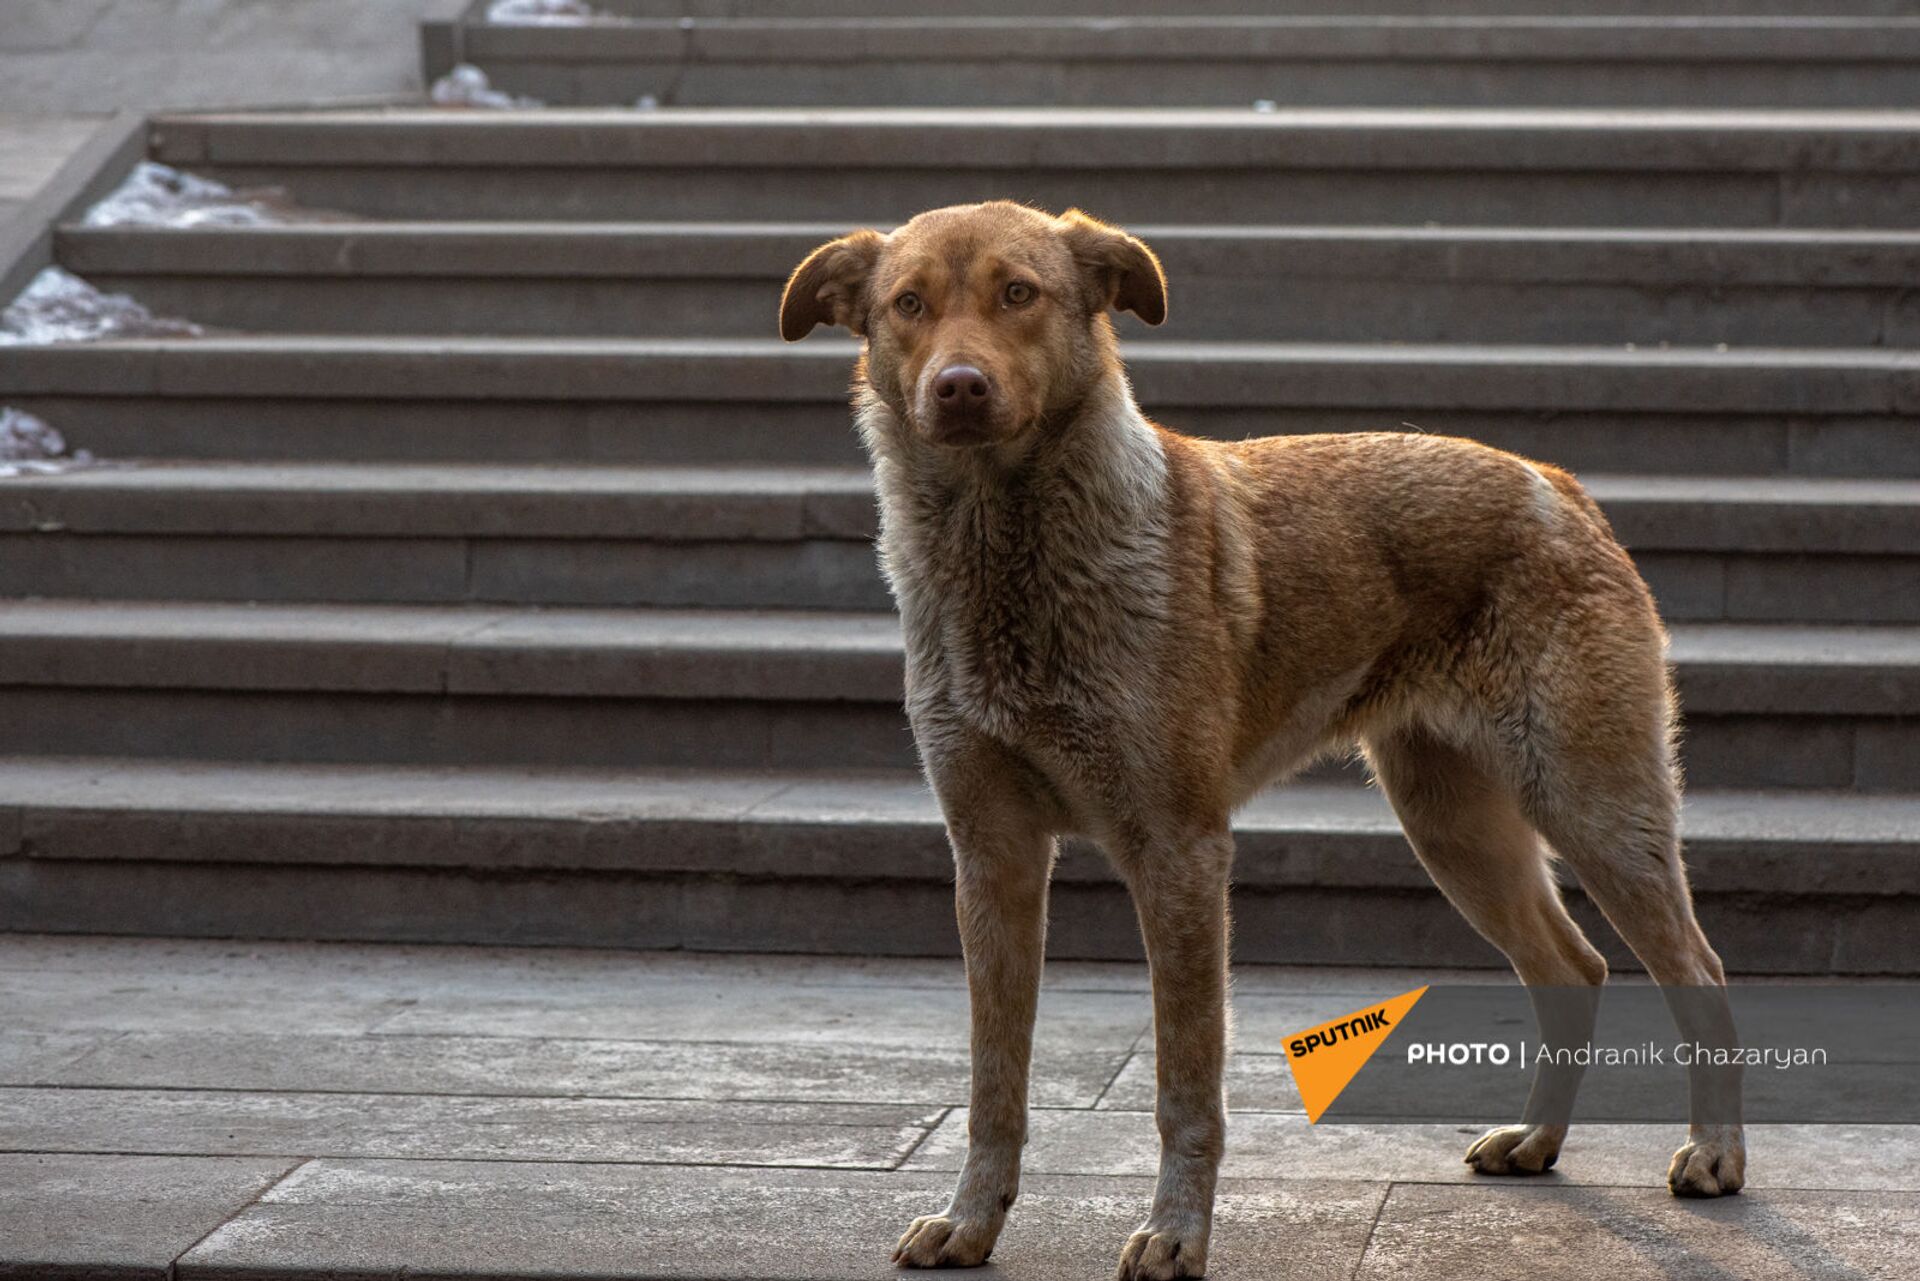 Бродячие собаки в Ереване стали меньше нападать на людей? Эксперт пояснил ситуацию - Sputnik Армения, 1920, 12.02.2021